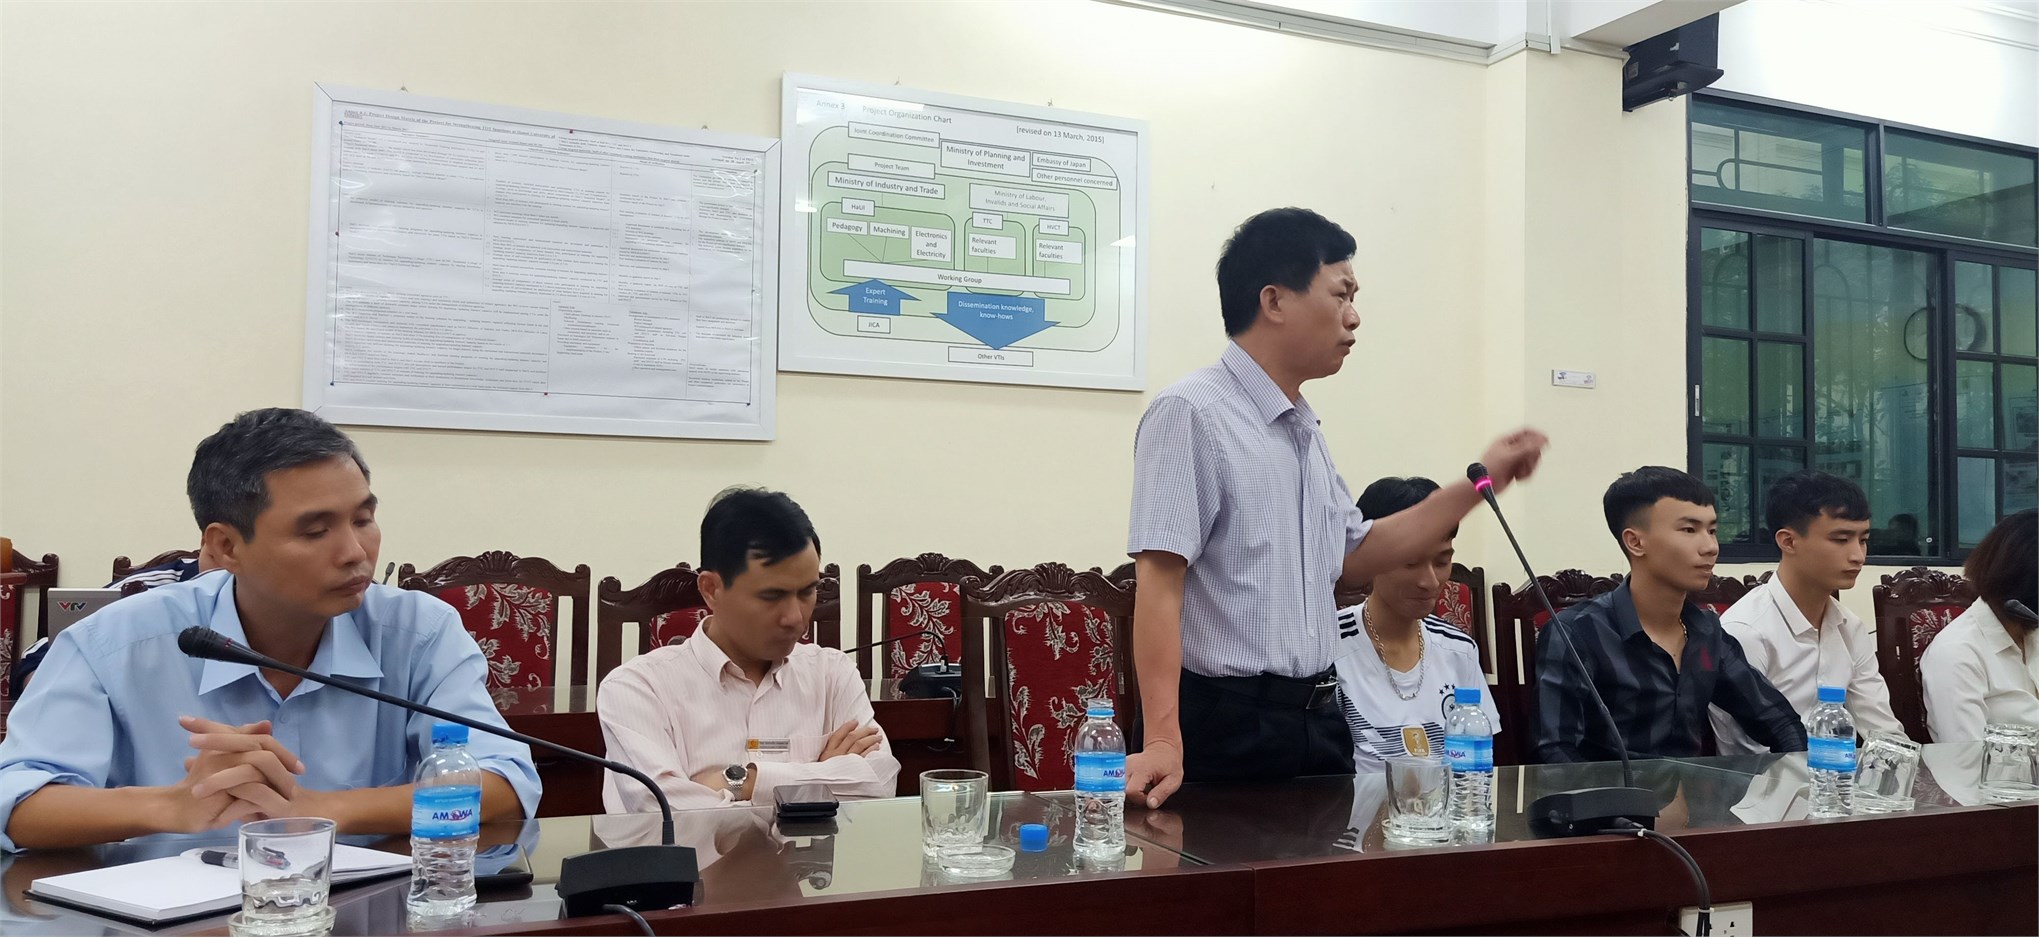 Trung tâm Việt Nhật tổ chức hội nghị Lớp trưởng – Bí thư chi đoàn năm học 2019 – 2020